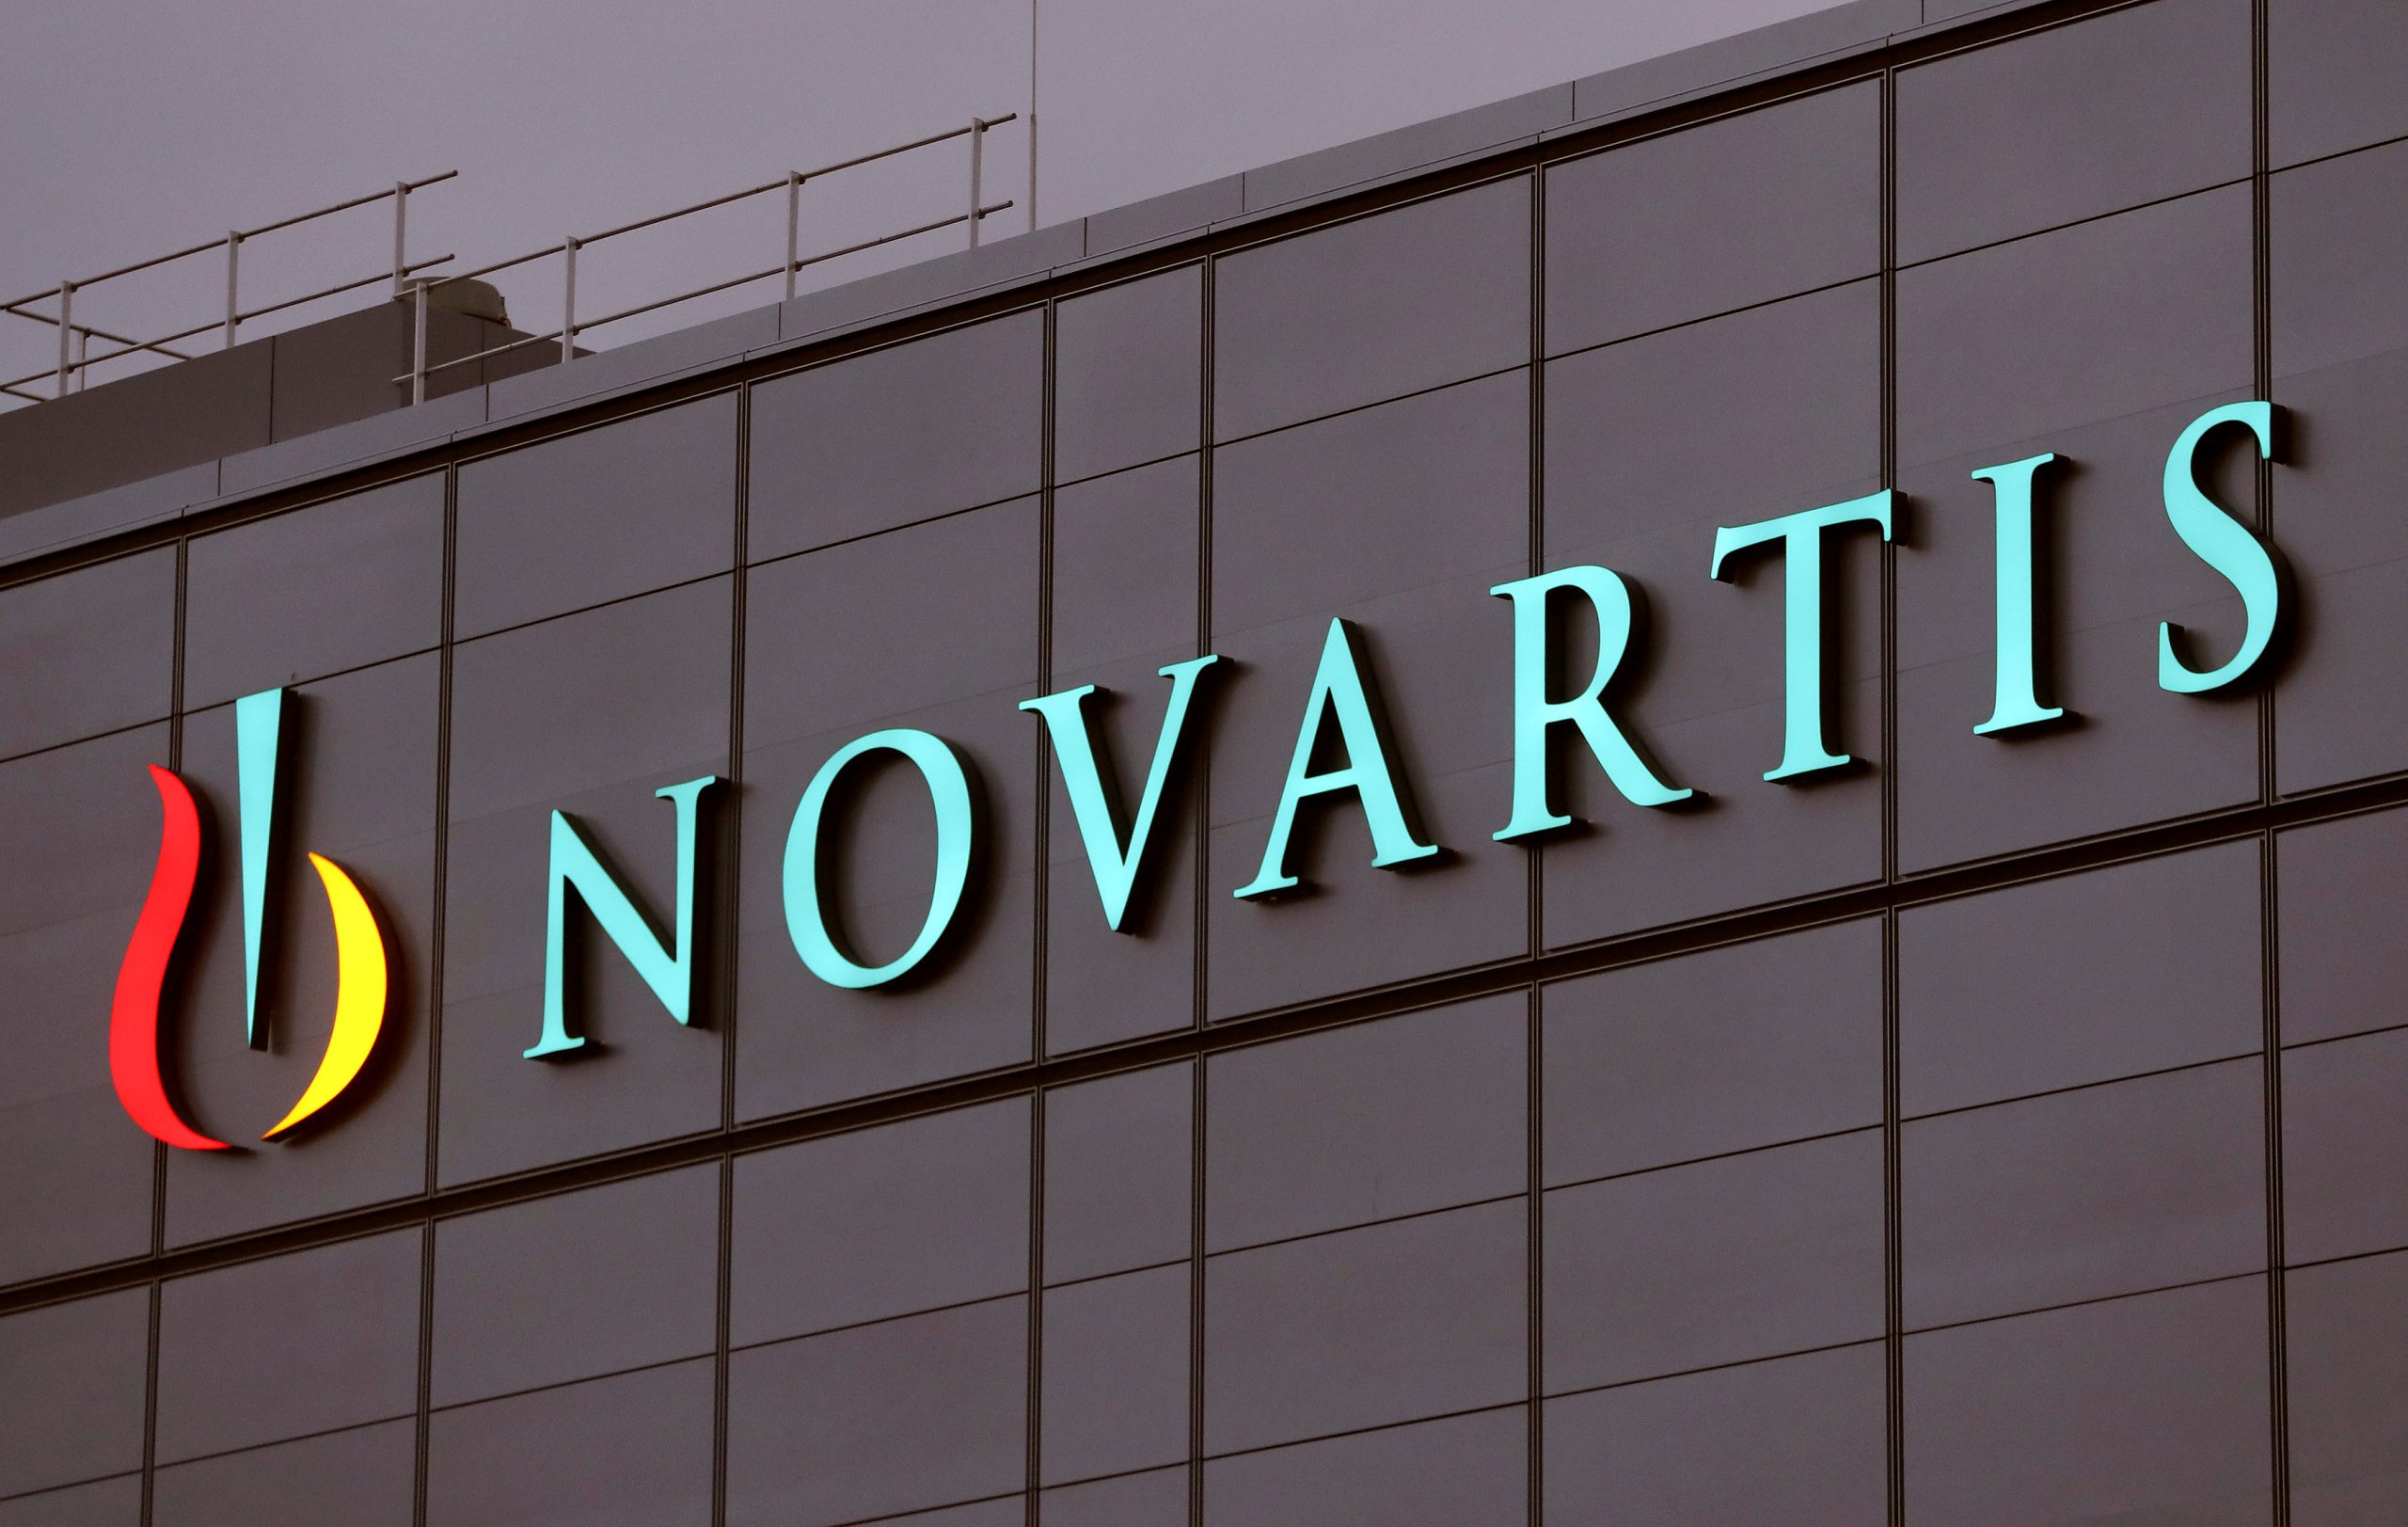 «Δεν έχει βρεθεί κάποιο στοιχείο για δωροδοκία Ελλήνων πολιτικών στην υπόθεση Novartis» λέει το Bloomberg